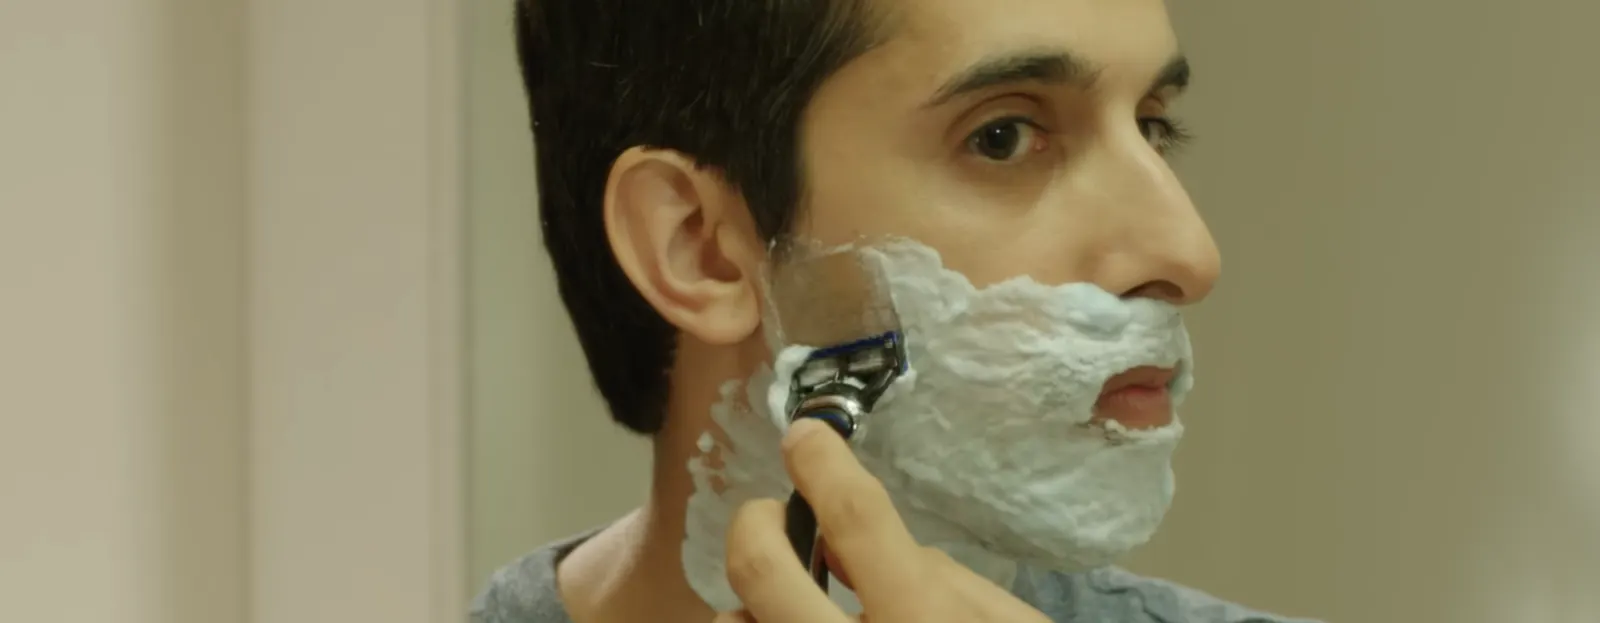 Cómo afeitarse una barba espesa o dura